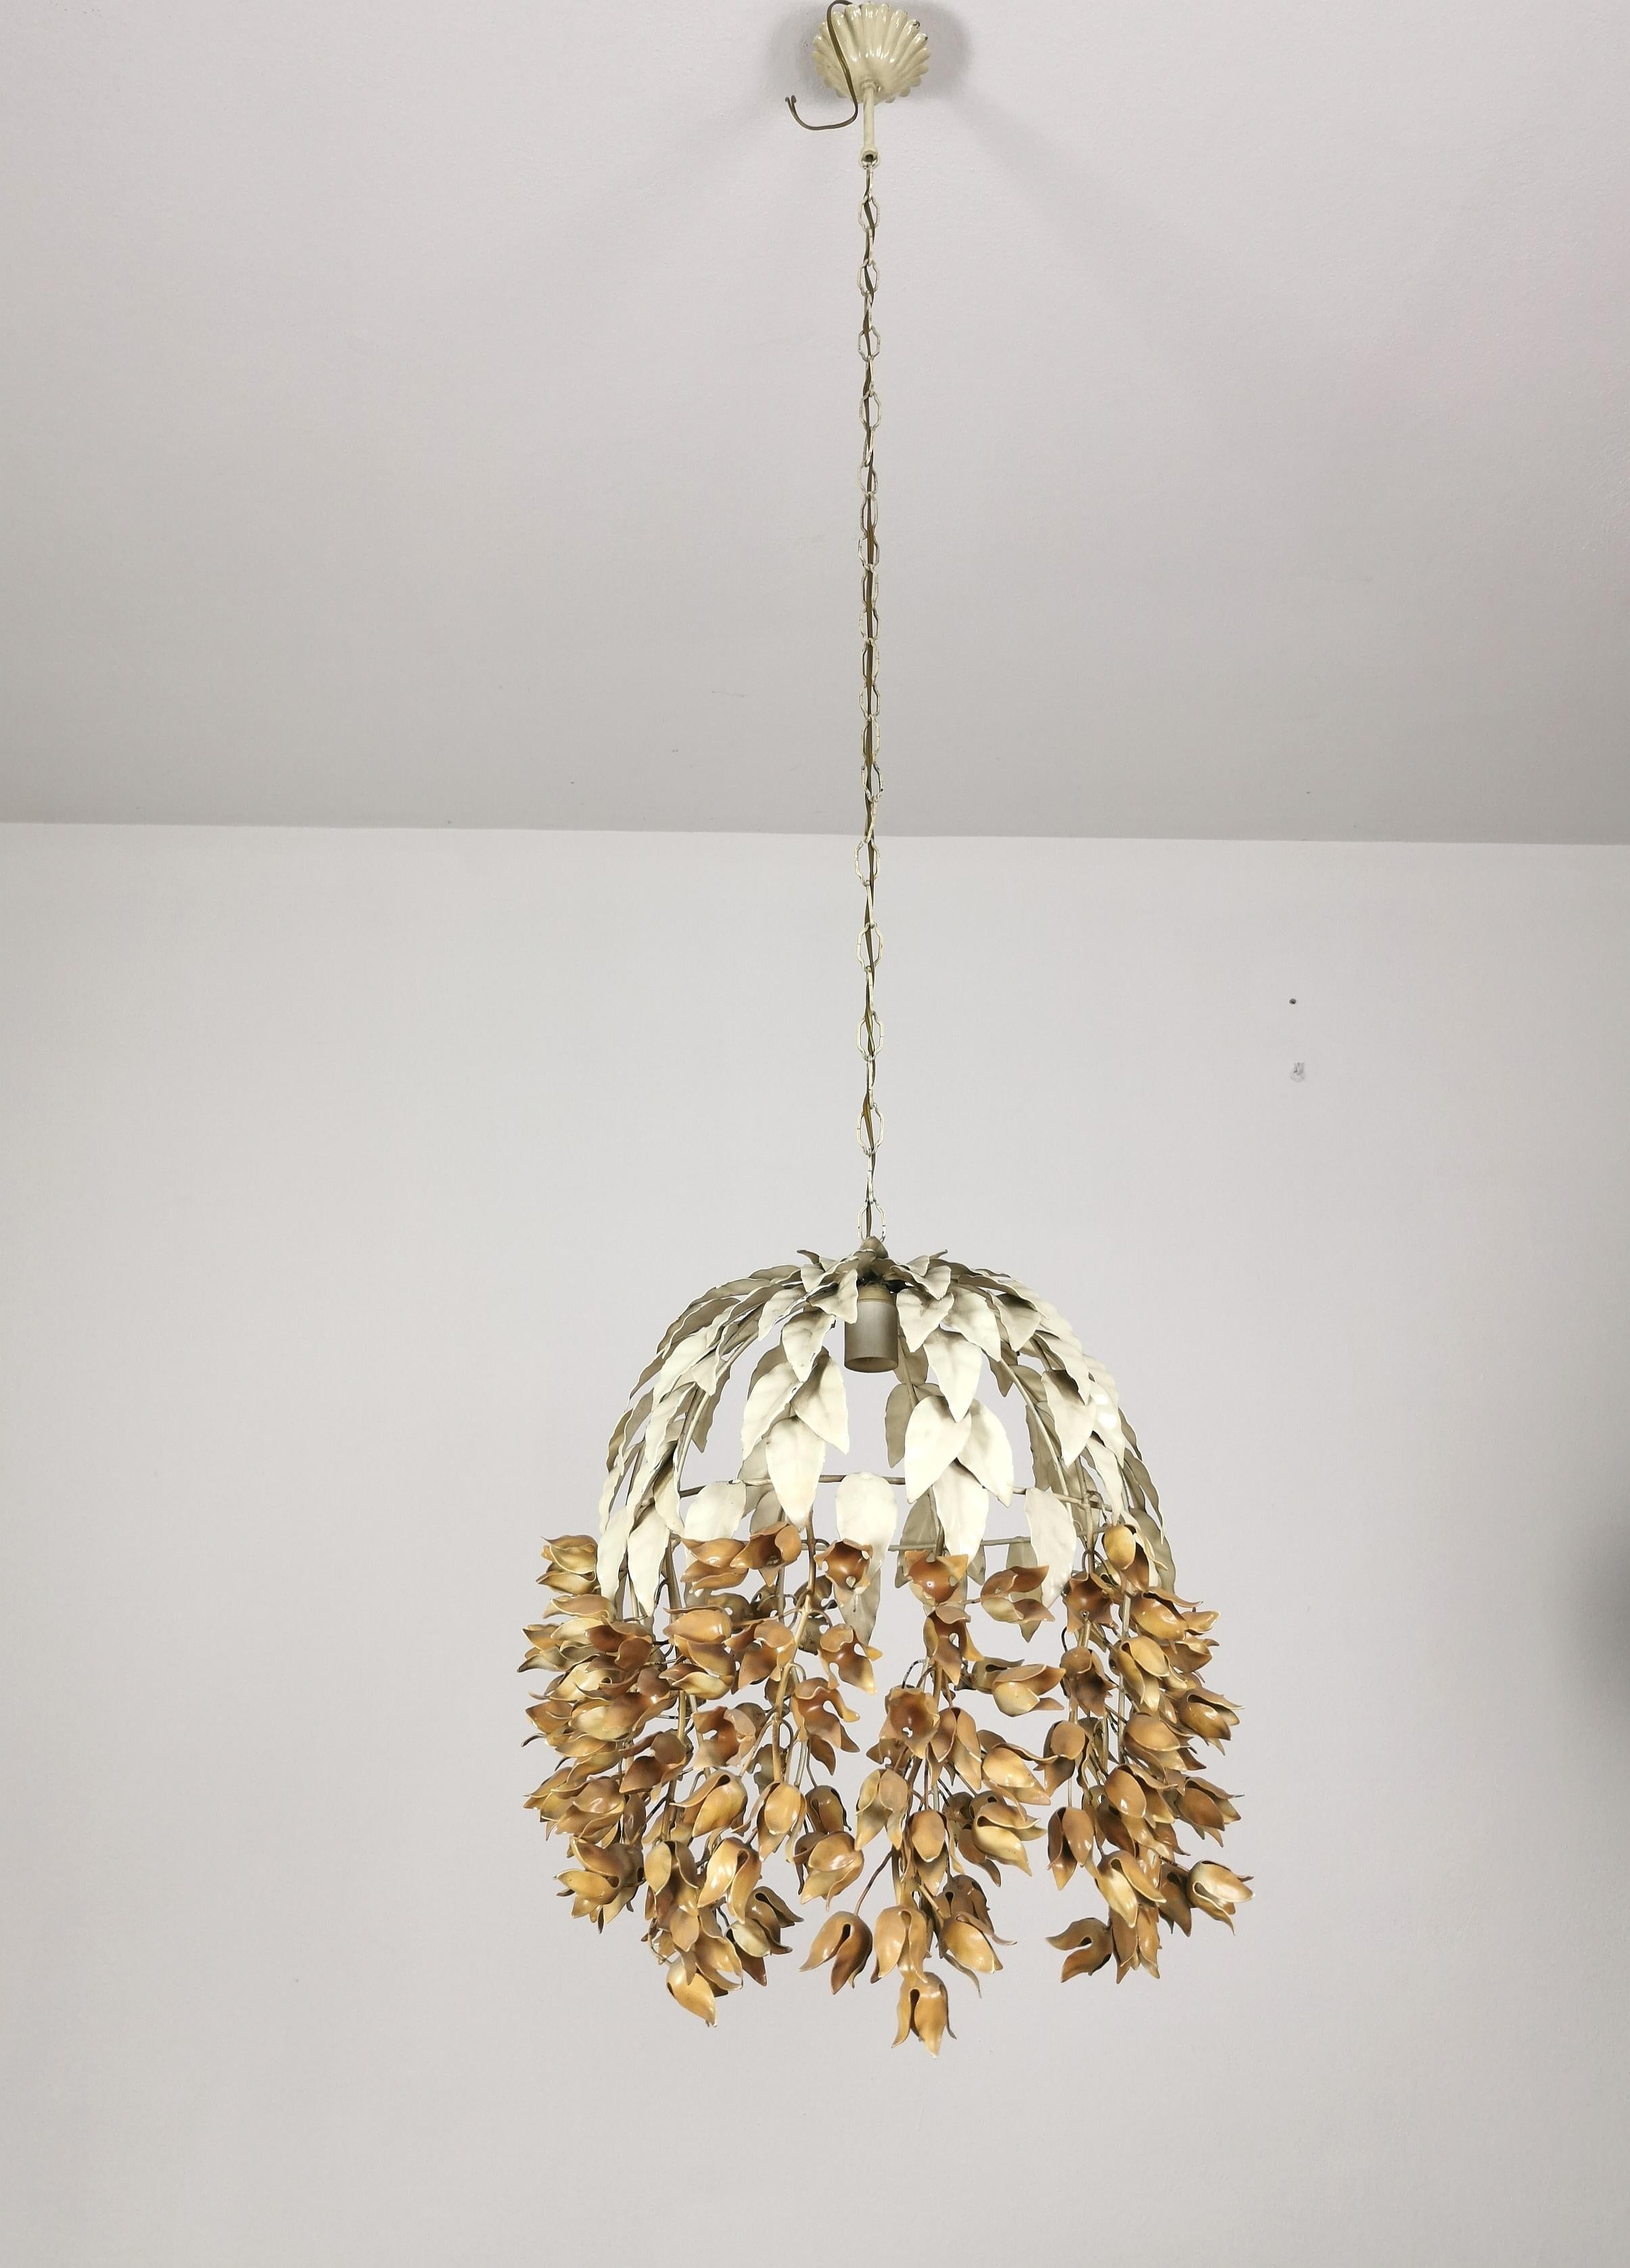 Paire de lampes à suspension de différentes hauteurs produites en Italie dans les années 1960. Chaque suspension individuelle est faite de métal émaillé avec des décorations de feuilles dans la partie supérieure et des décorations de fleurs séchées